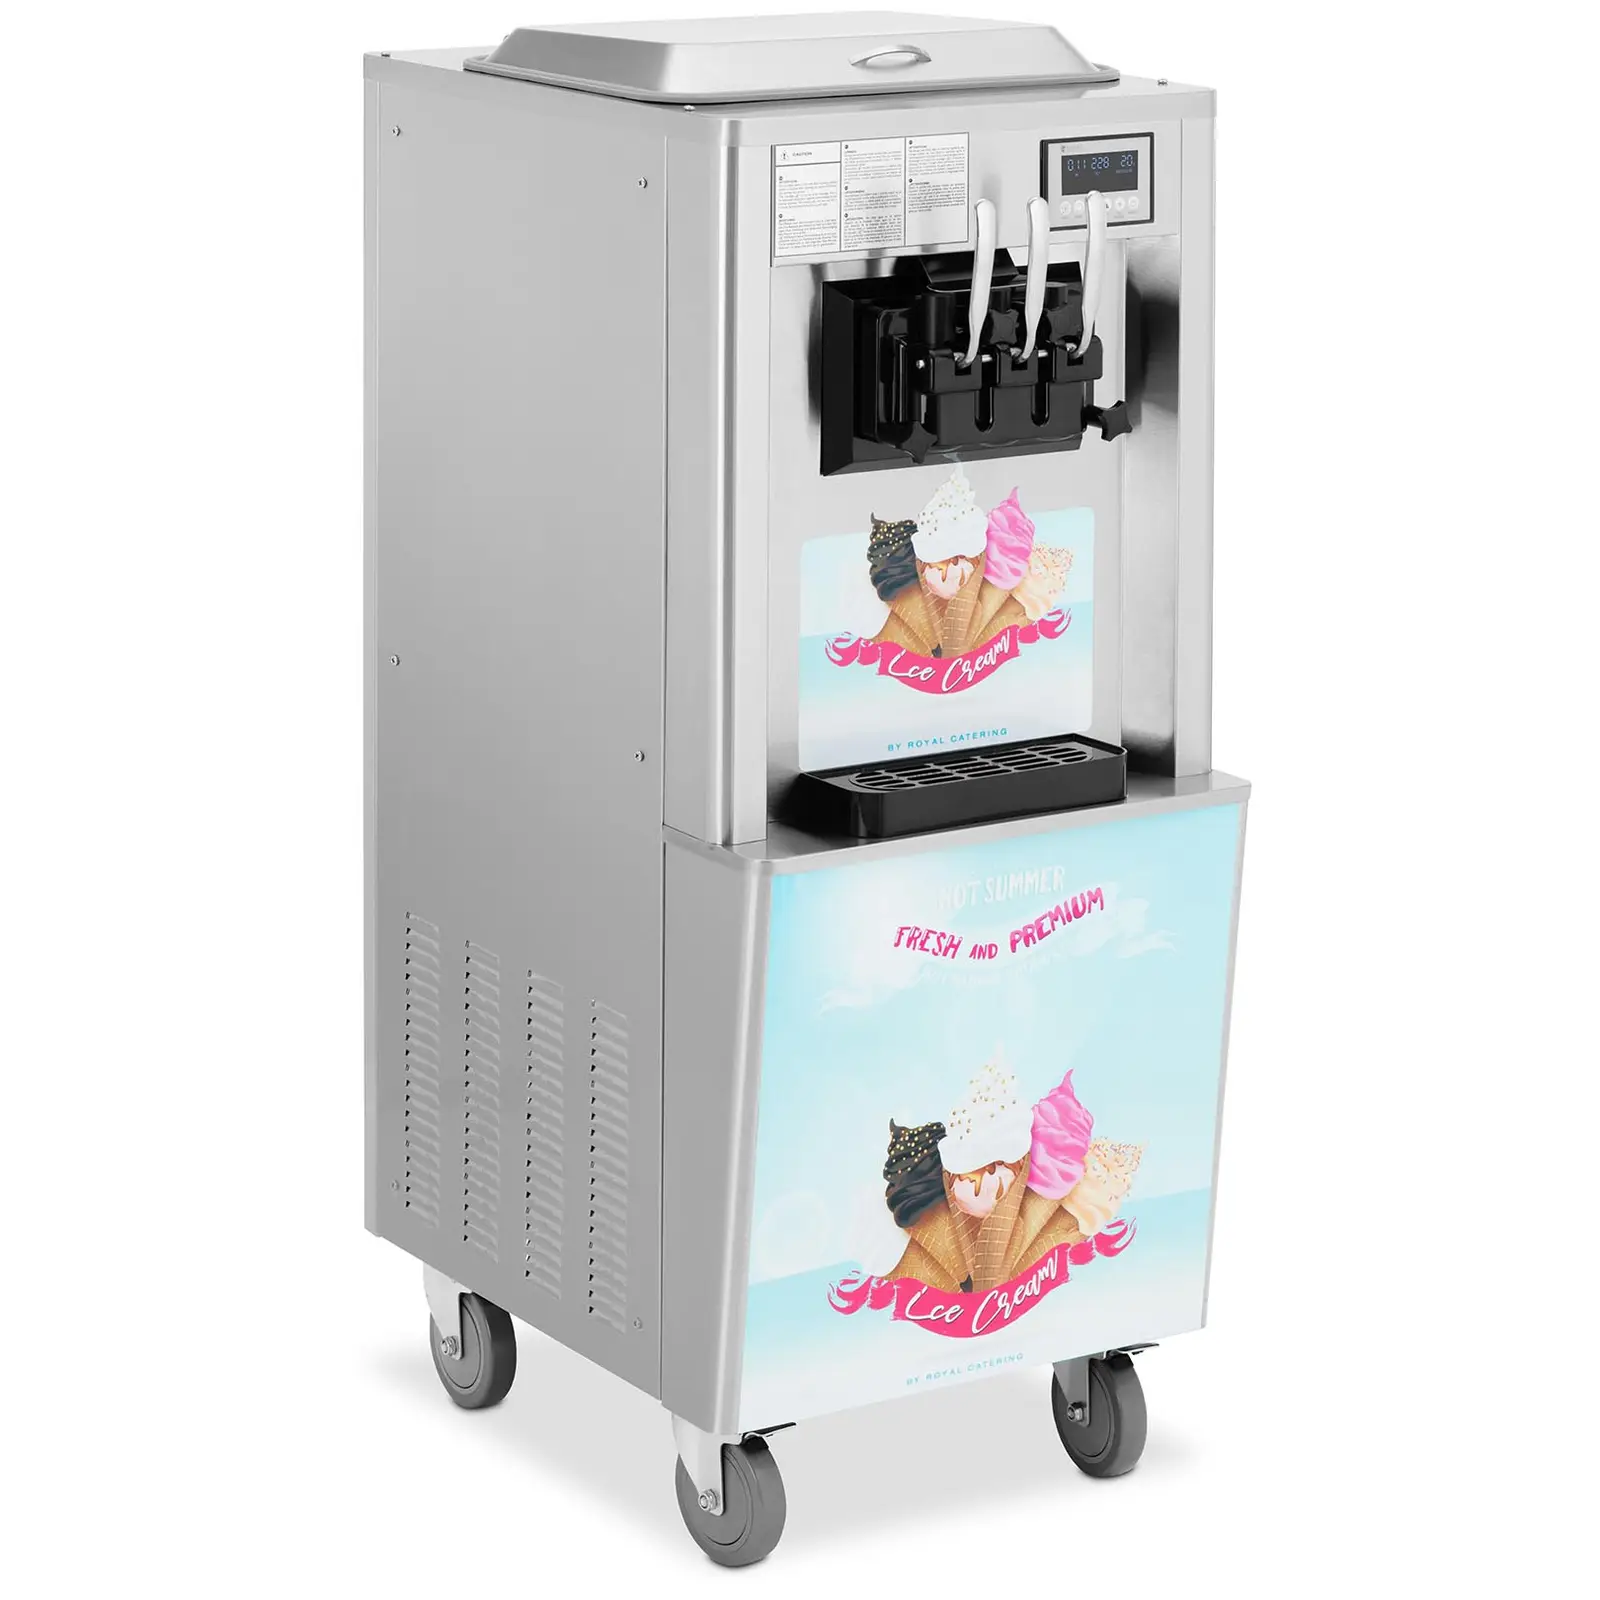 Stroj na točenou zmrzlinu - 2140 W - 33 l/h - třípákový - Royal Catering